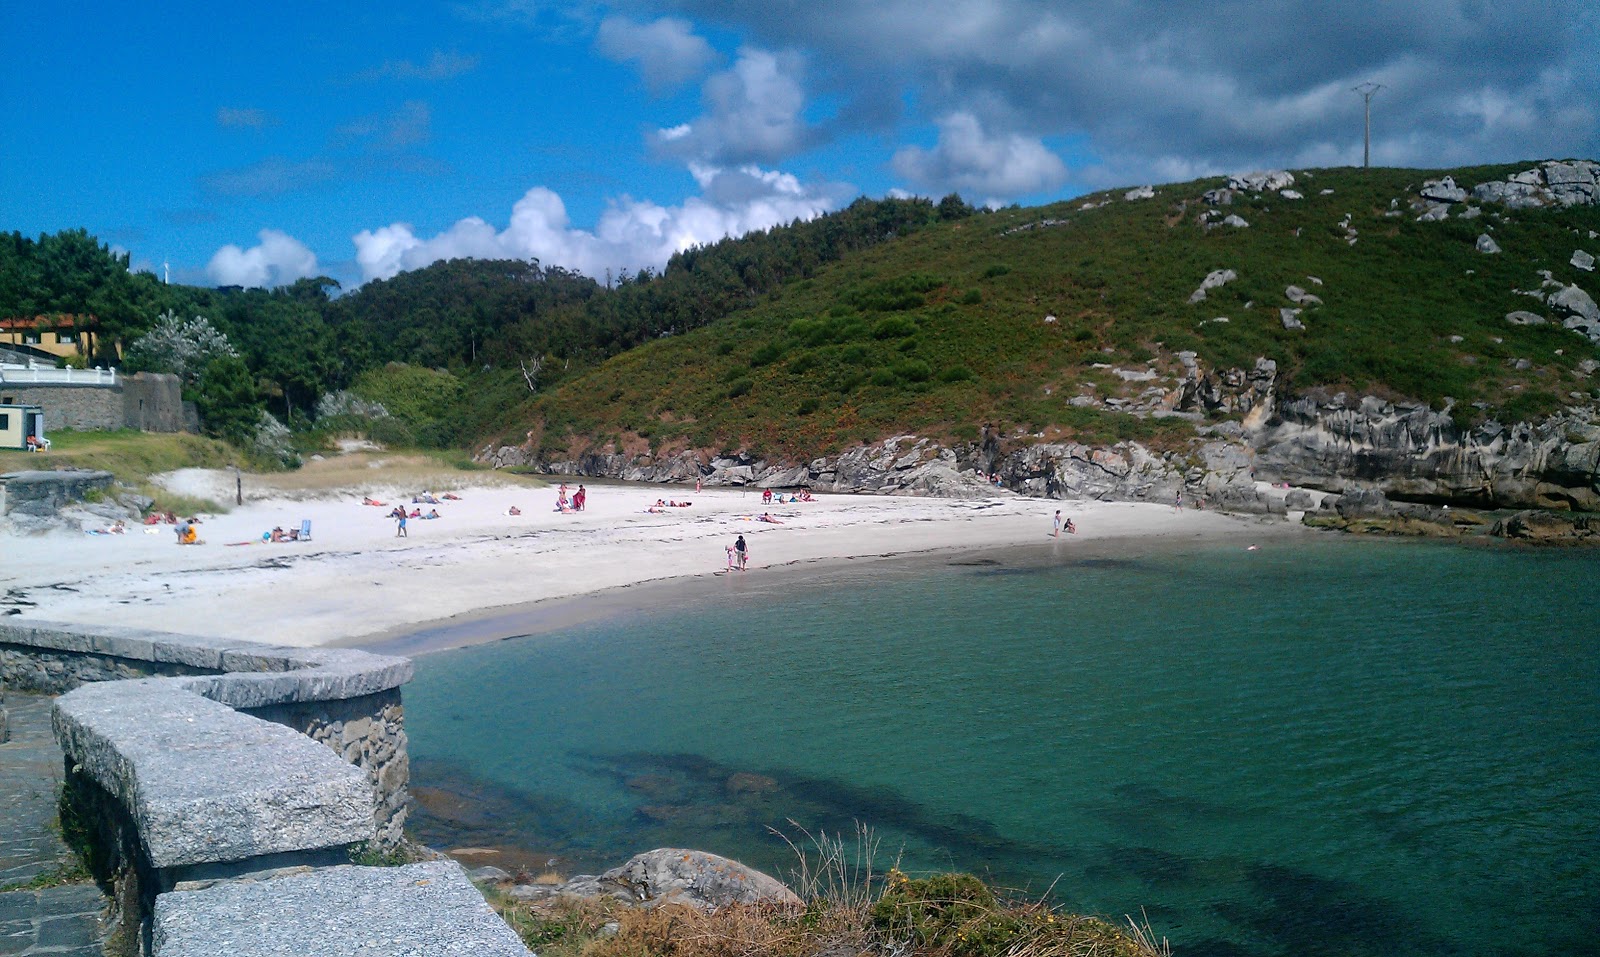 Praia do Osmo'in fotoğrafı geniş ile birlikte